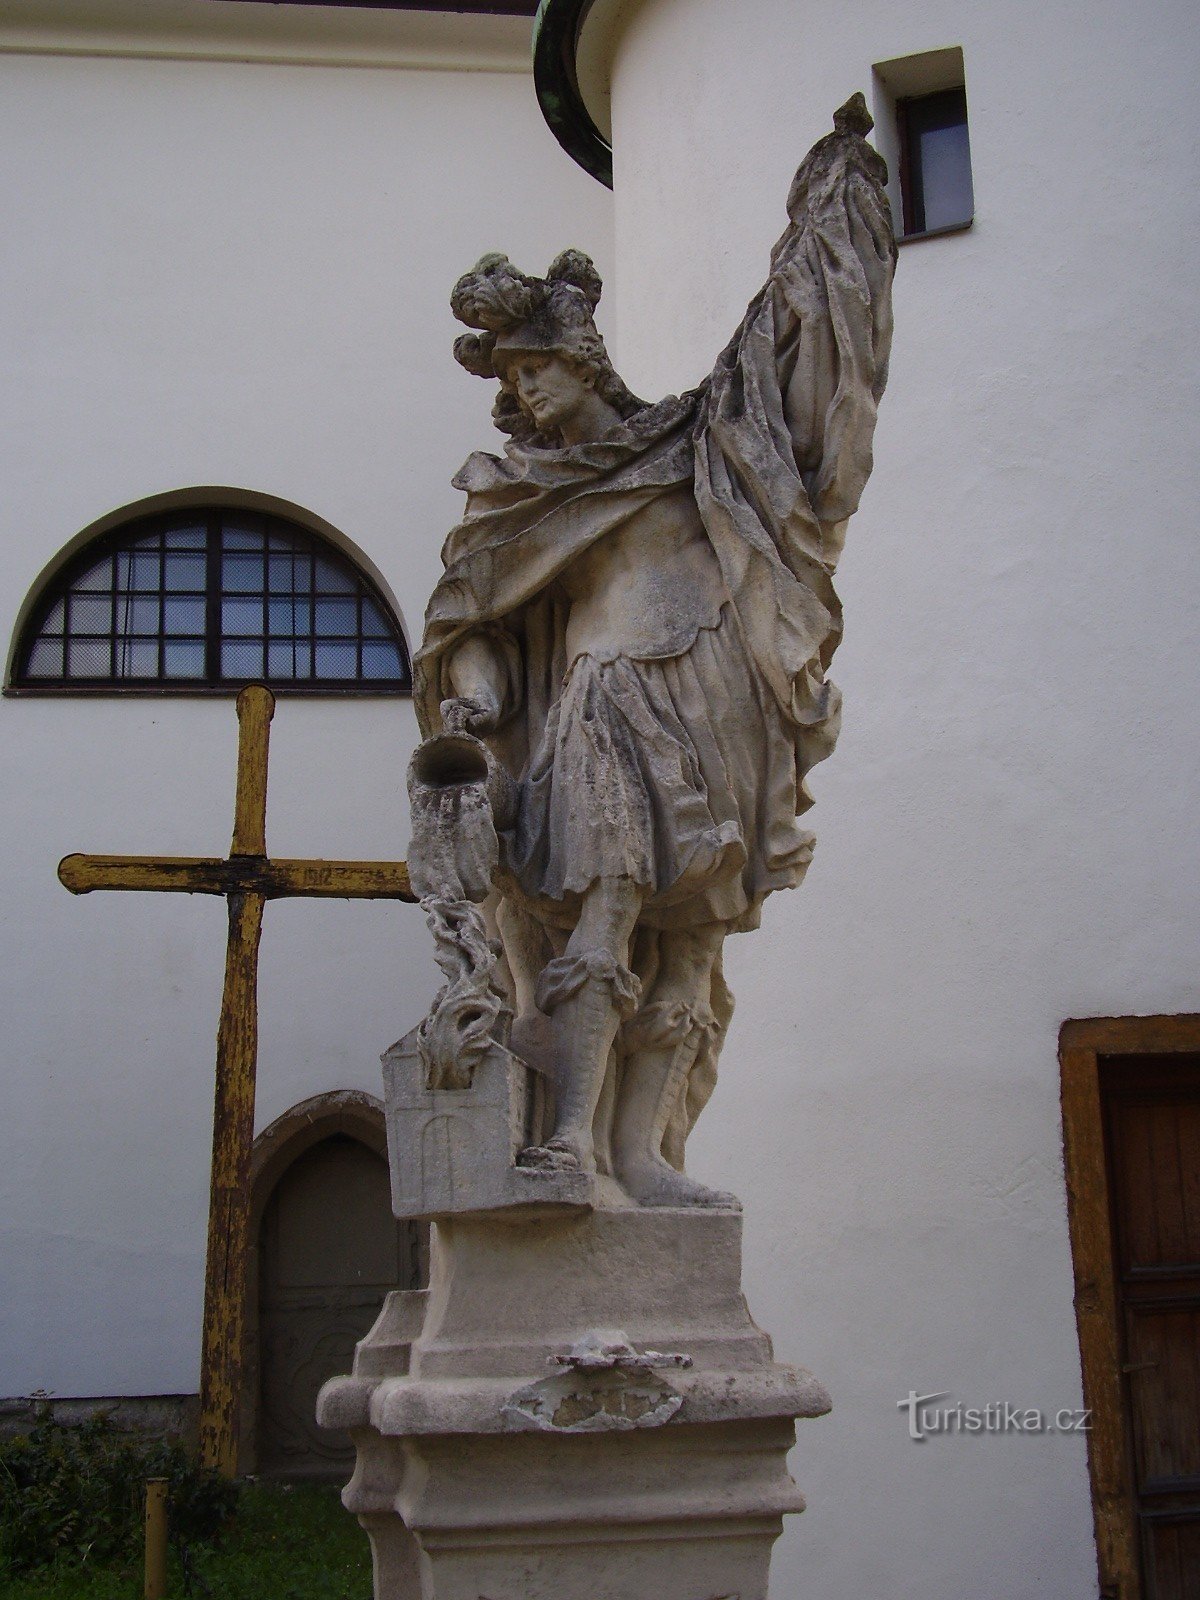 Estátua de S. Florian em Rosice perto de Brno